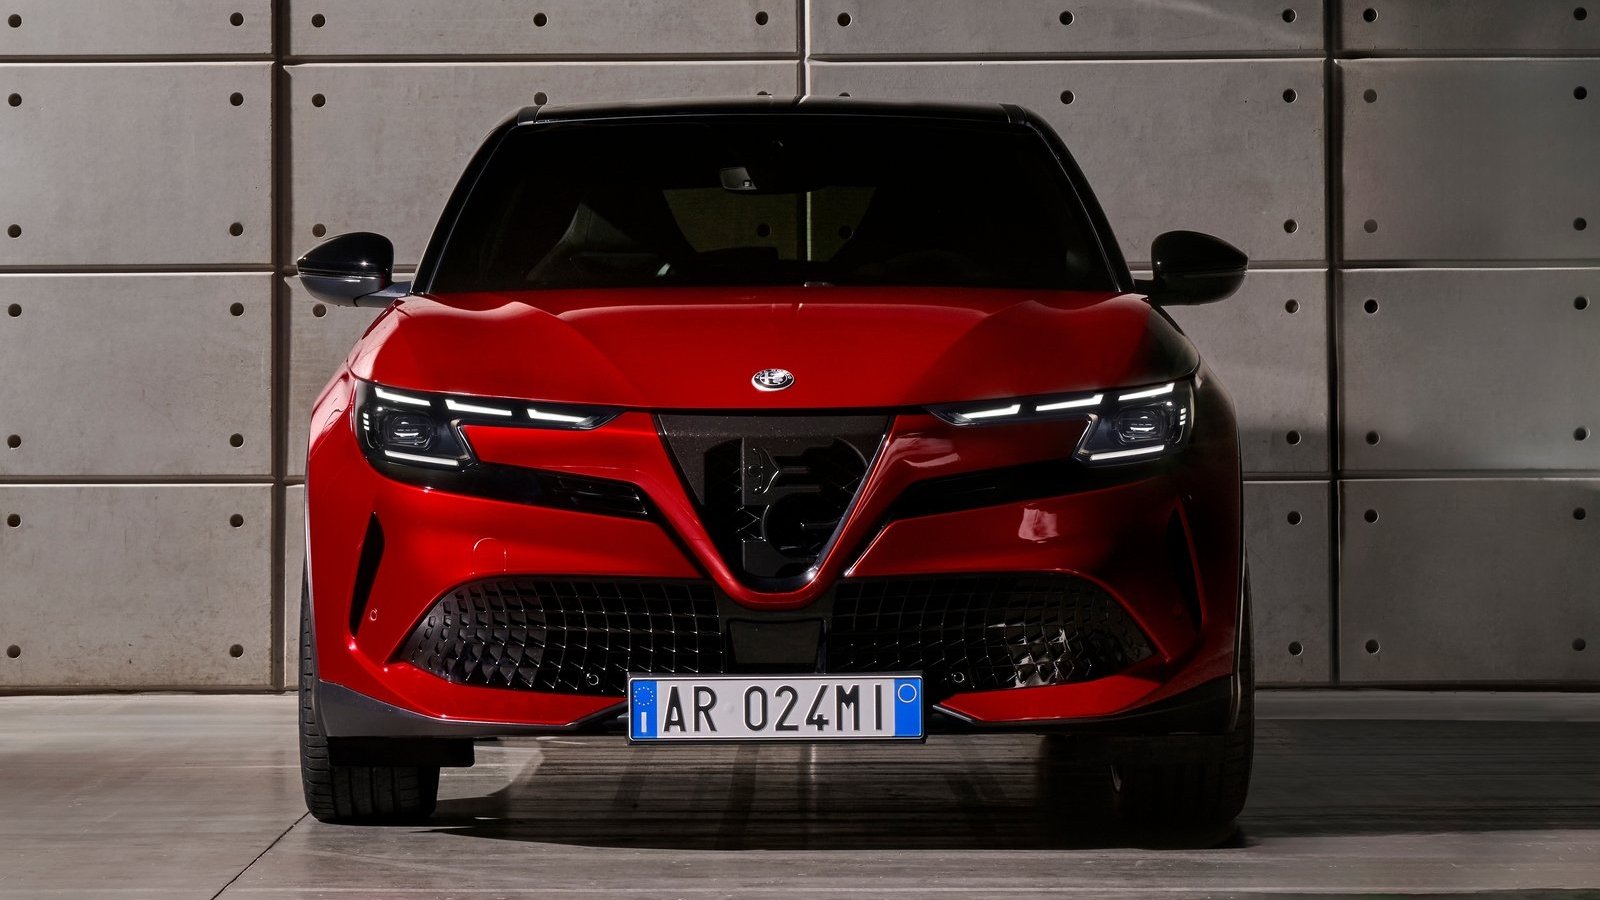 Alfa Romeo Milano - SoyMotor.com